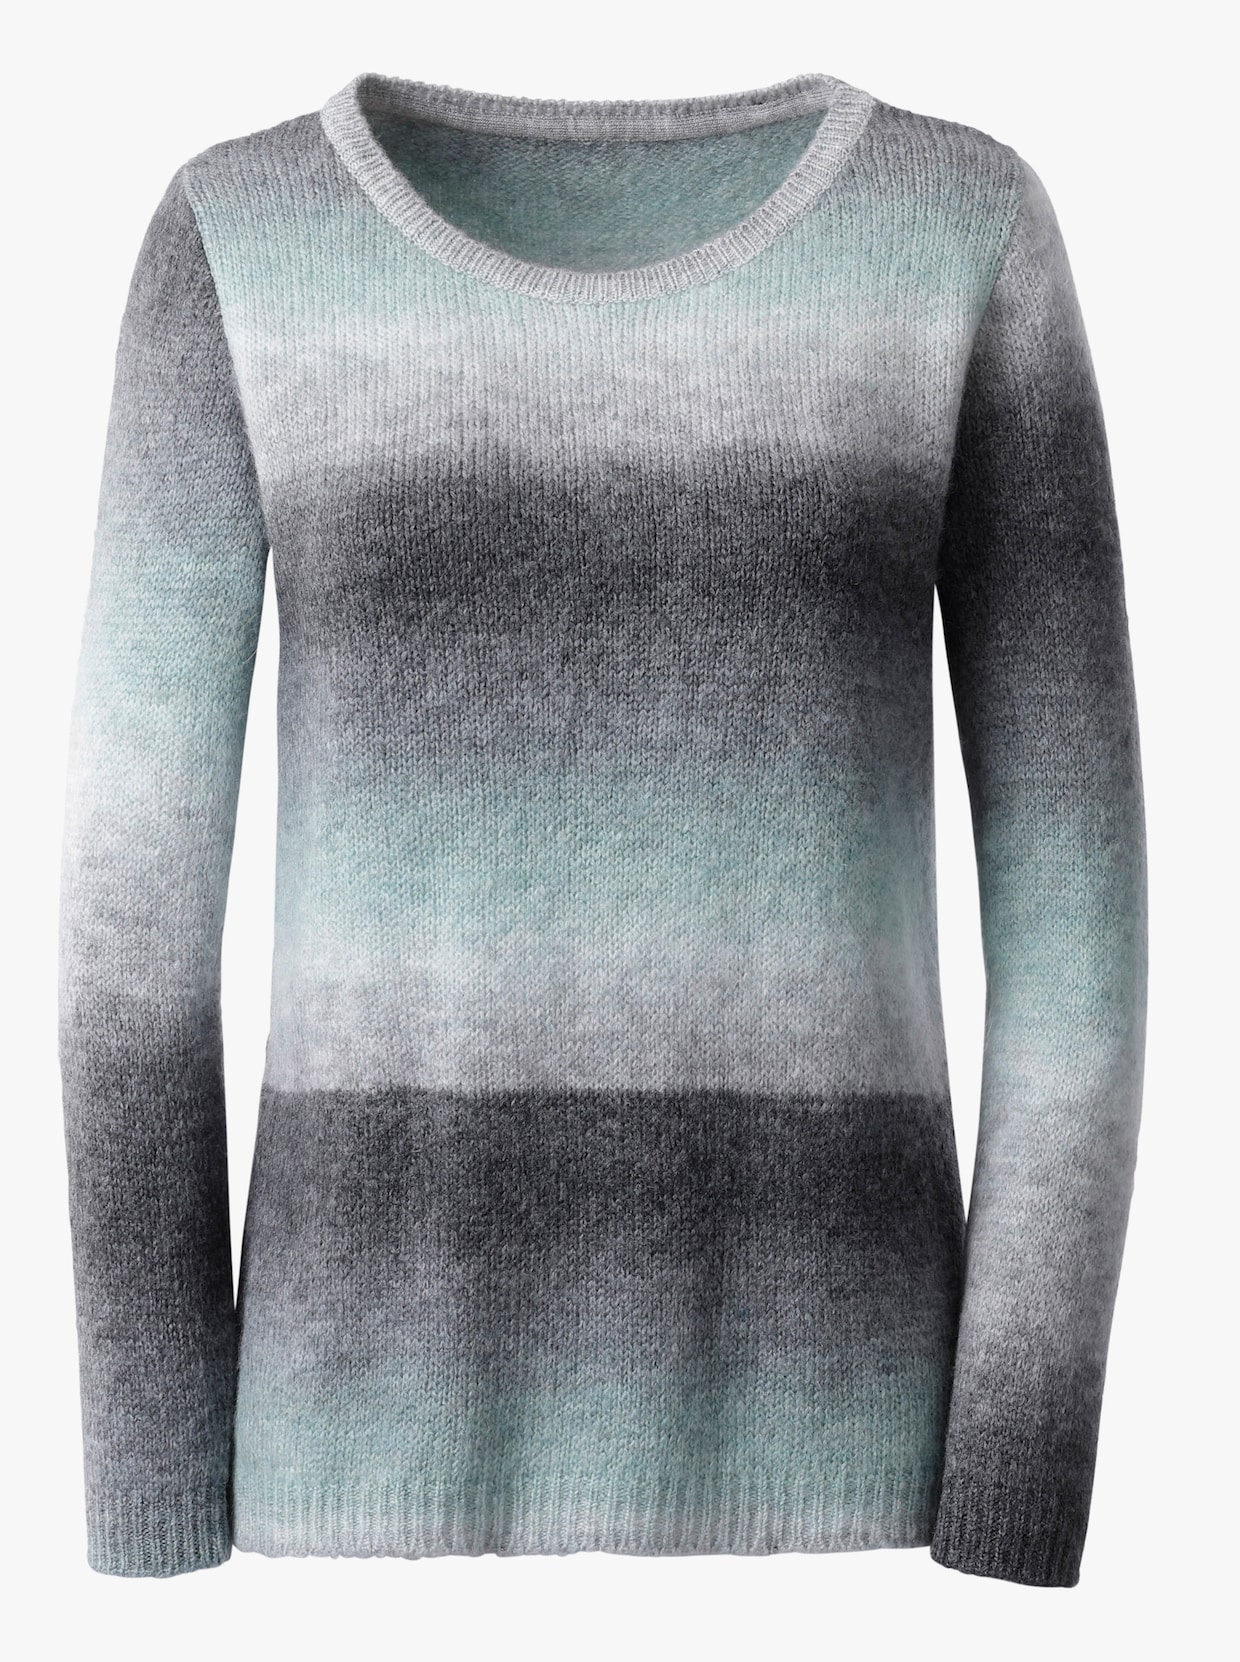 Pullover met ronde hals - grijs/winterturquoise